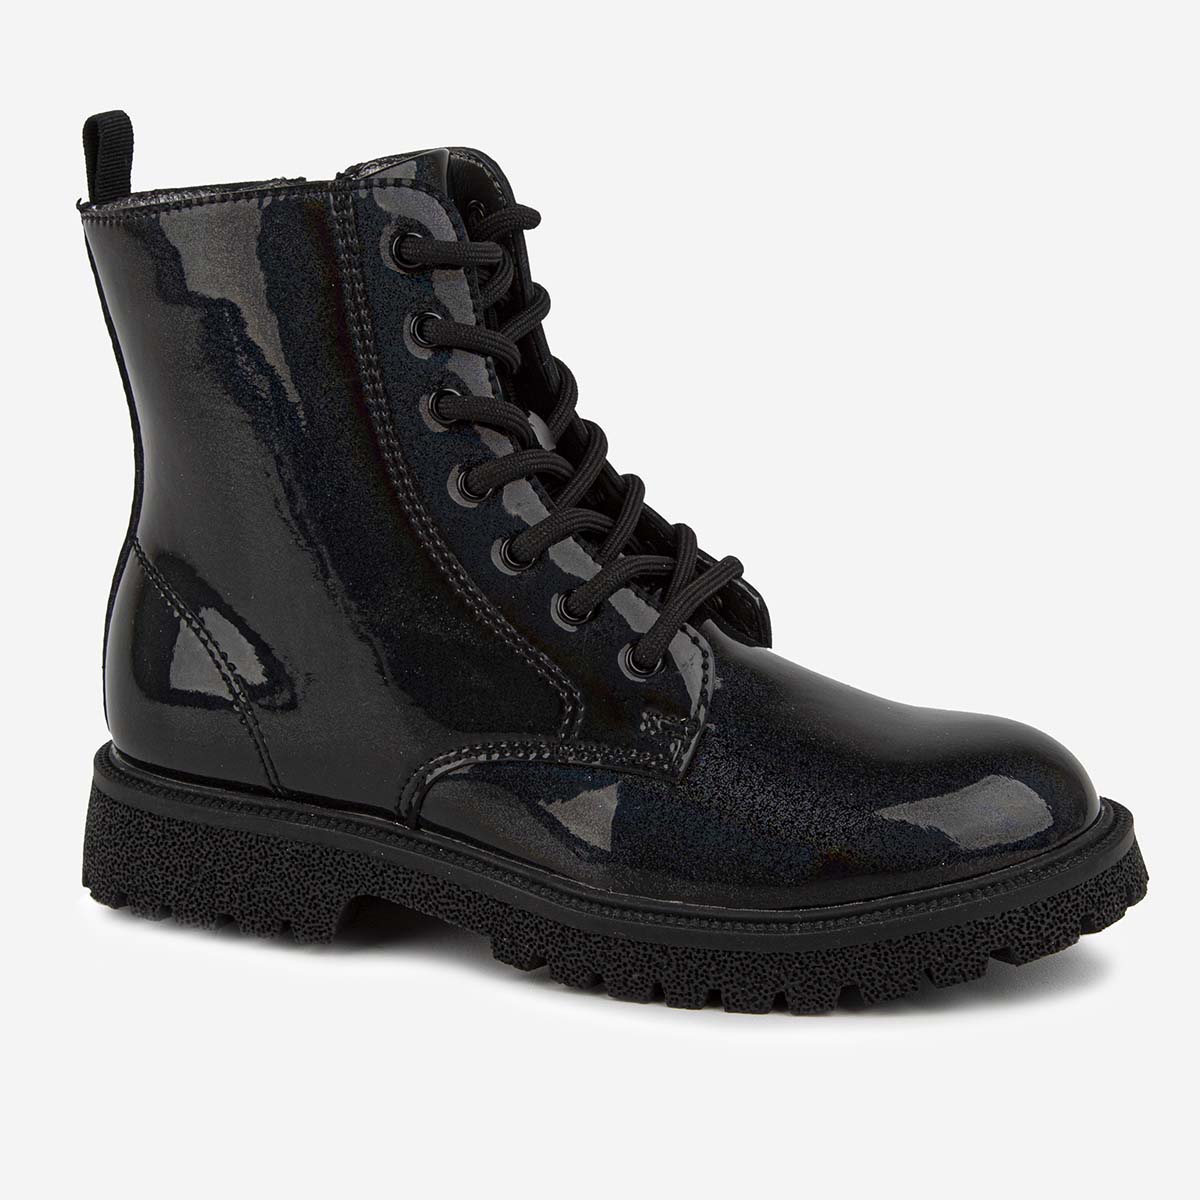 Ботинки Kapika 52556ук, цвет черный, размер 29